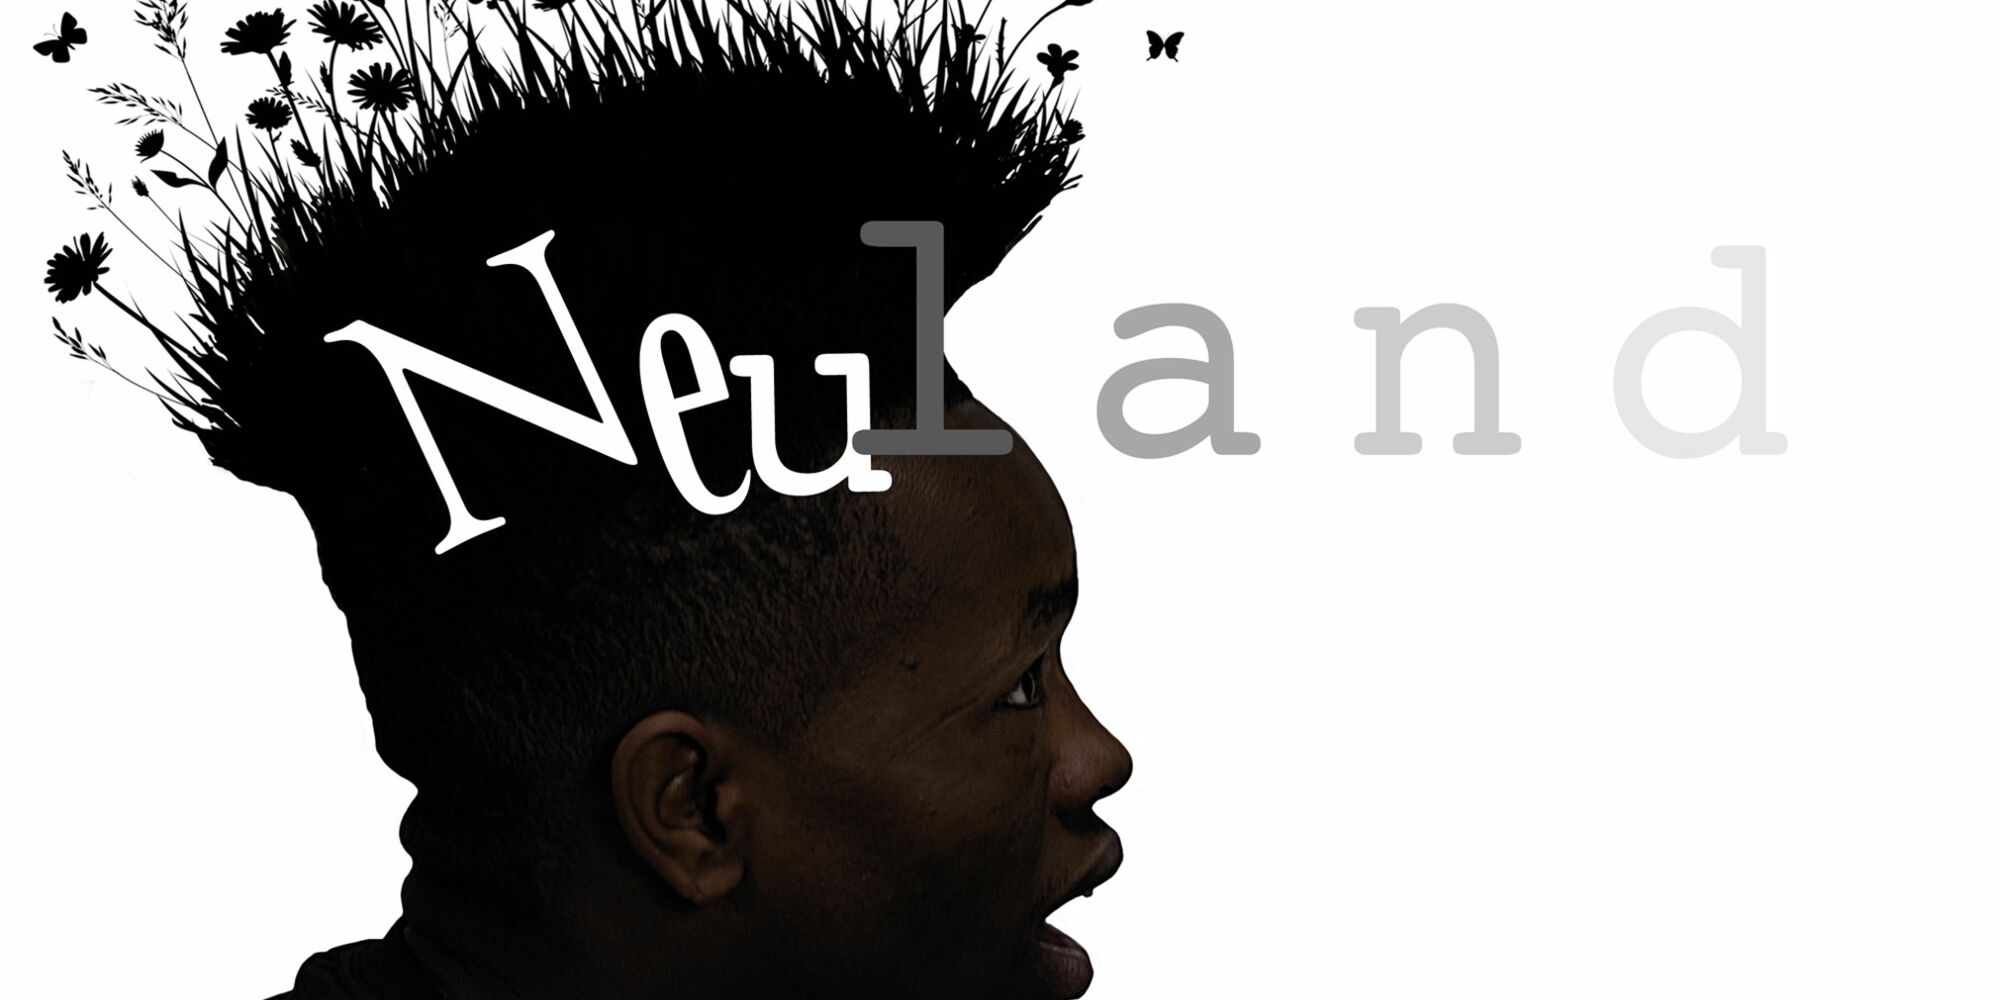 Hier sieht man das Plakat für das Stück "Neuland". Der Kopf eines Schauspieler mit dunkler Hautfarbe ist im Profil zu sehen. Die Haare auf seinem Kopf gehen in eine Blumenwiese über.